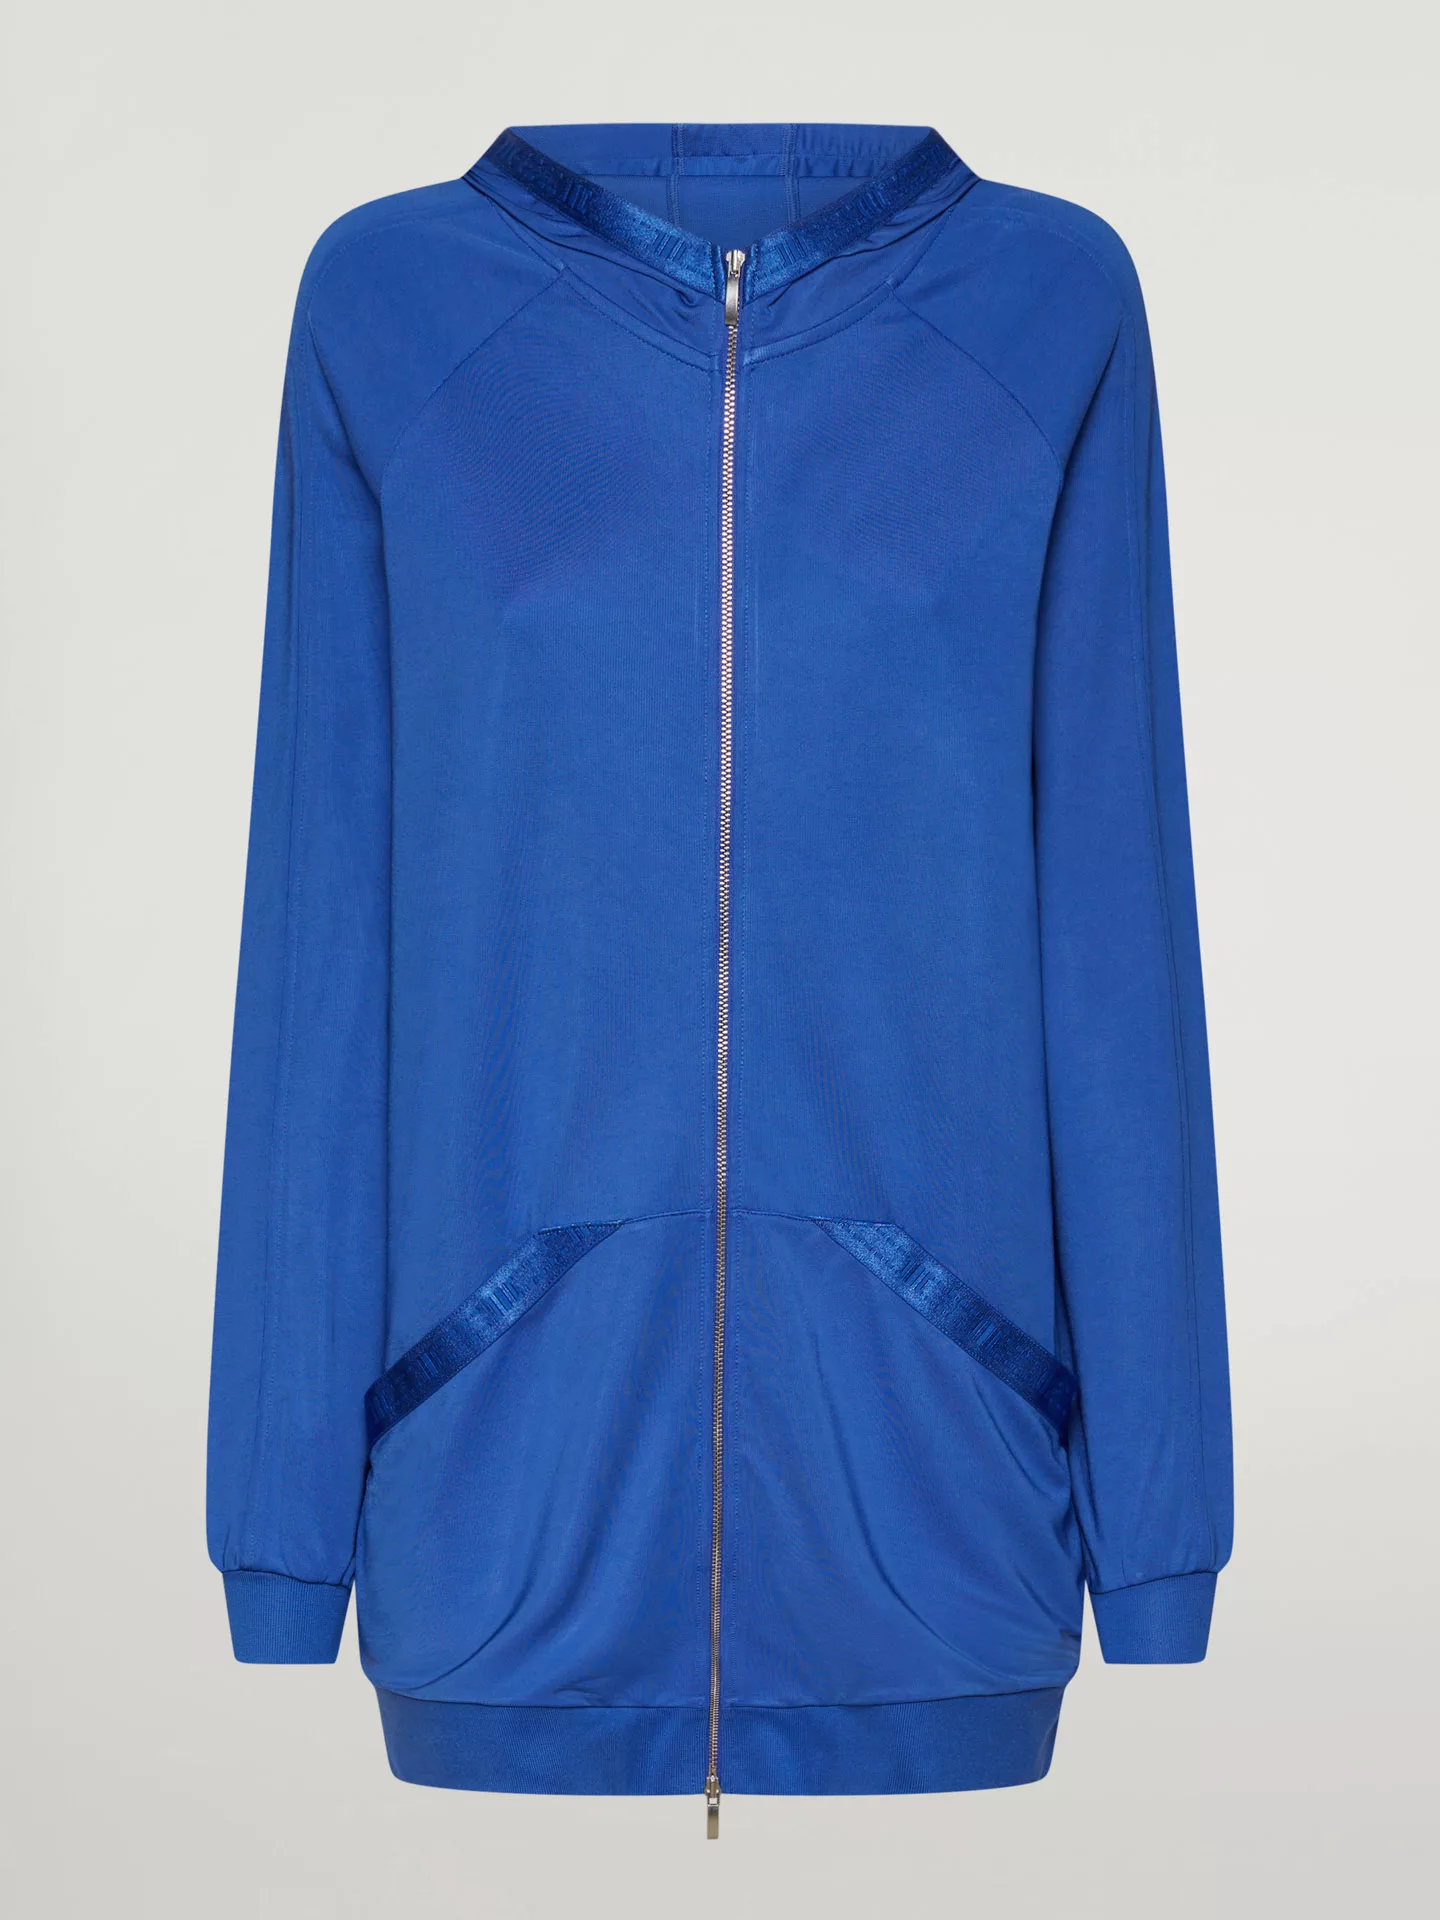 Wolford - Full zip Sweater Jacket, Frau, dazzling blue, Größe: M günstig online kaufen